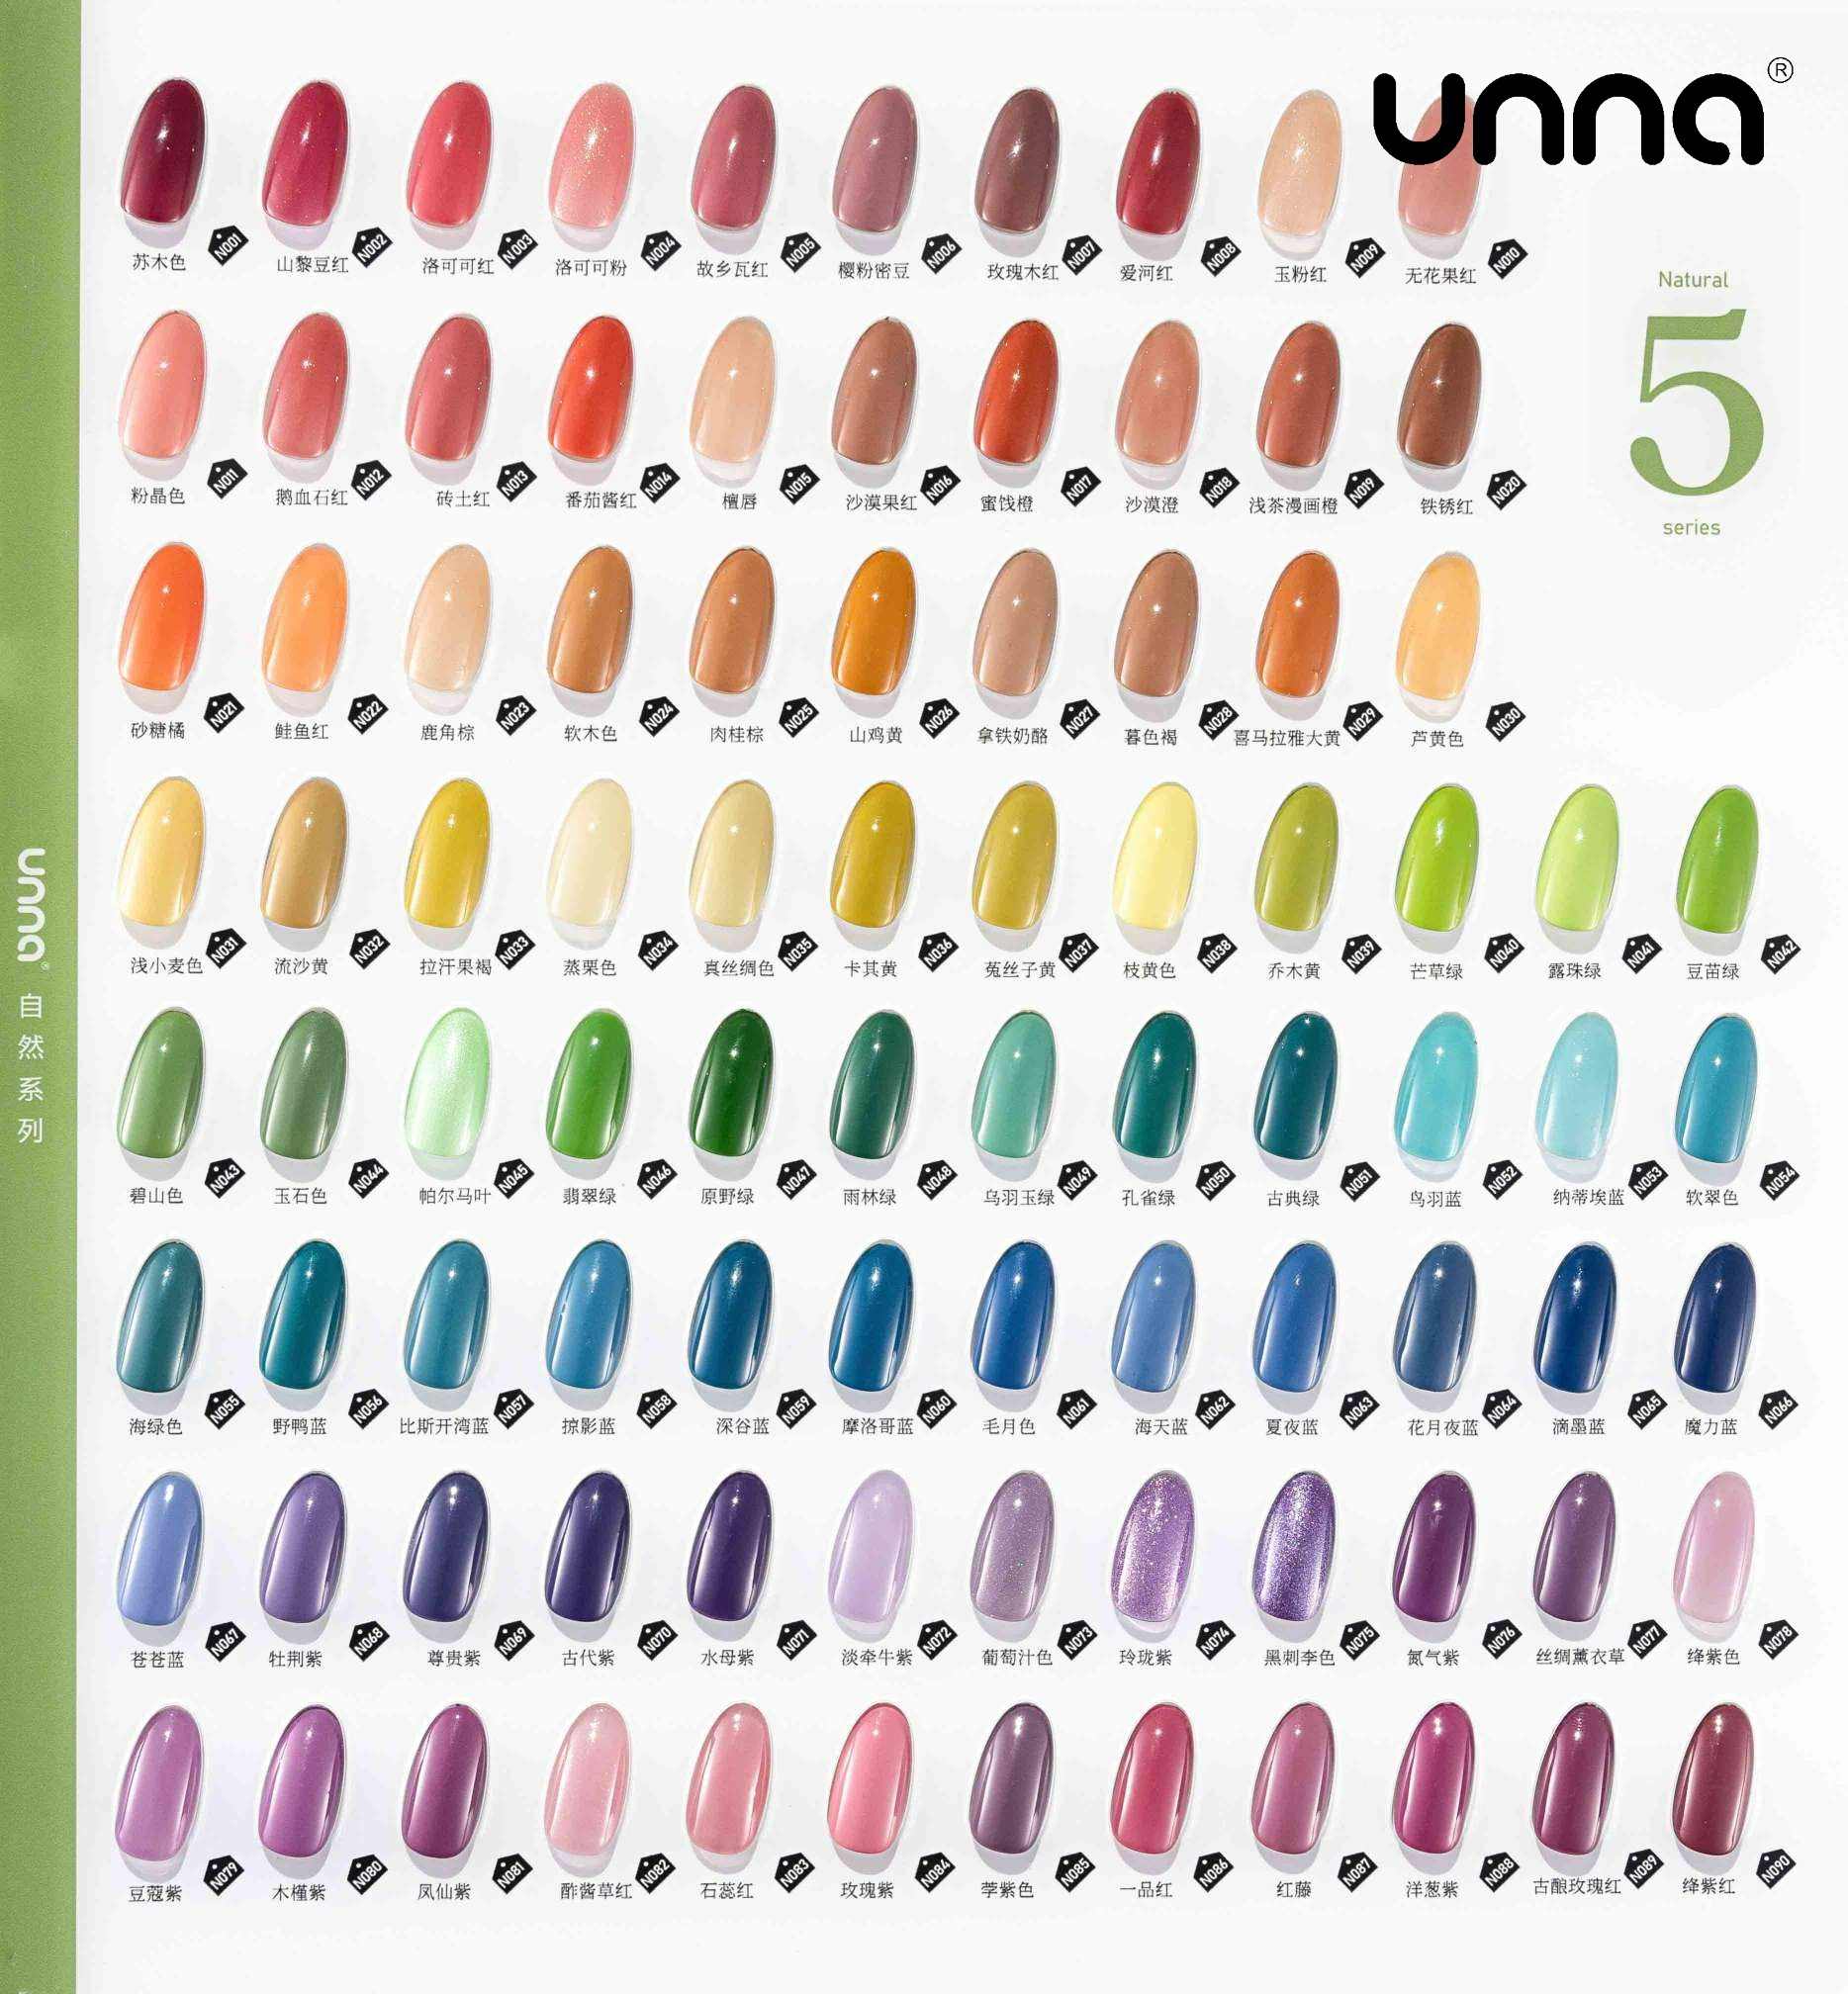 UNNA Color Soak Off Uv Gel Nail Polish Natural Series